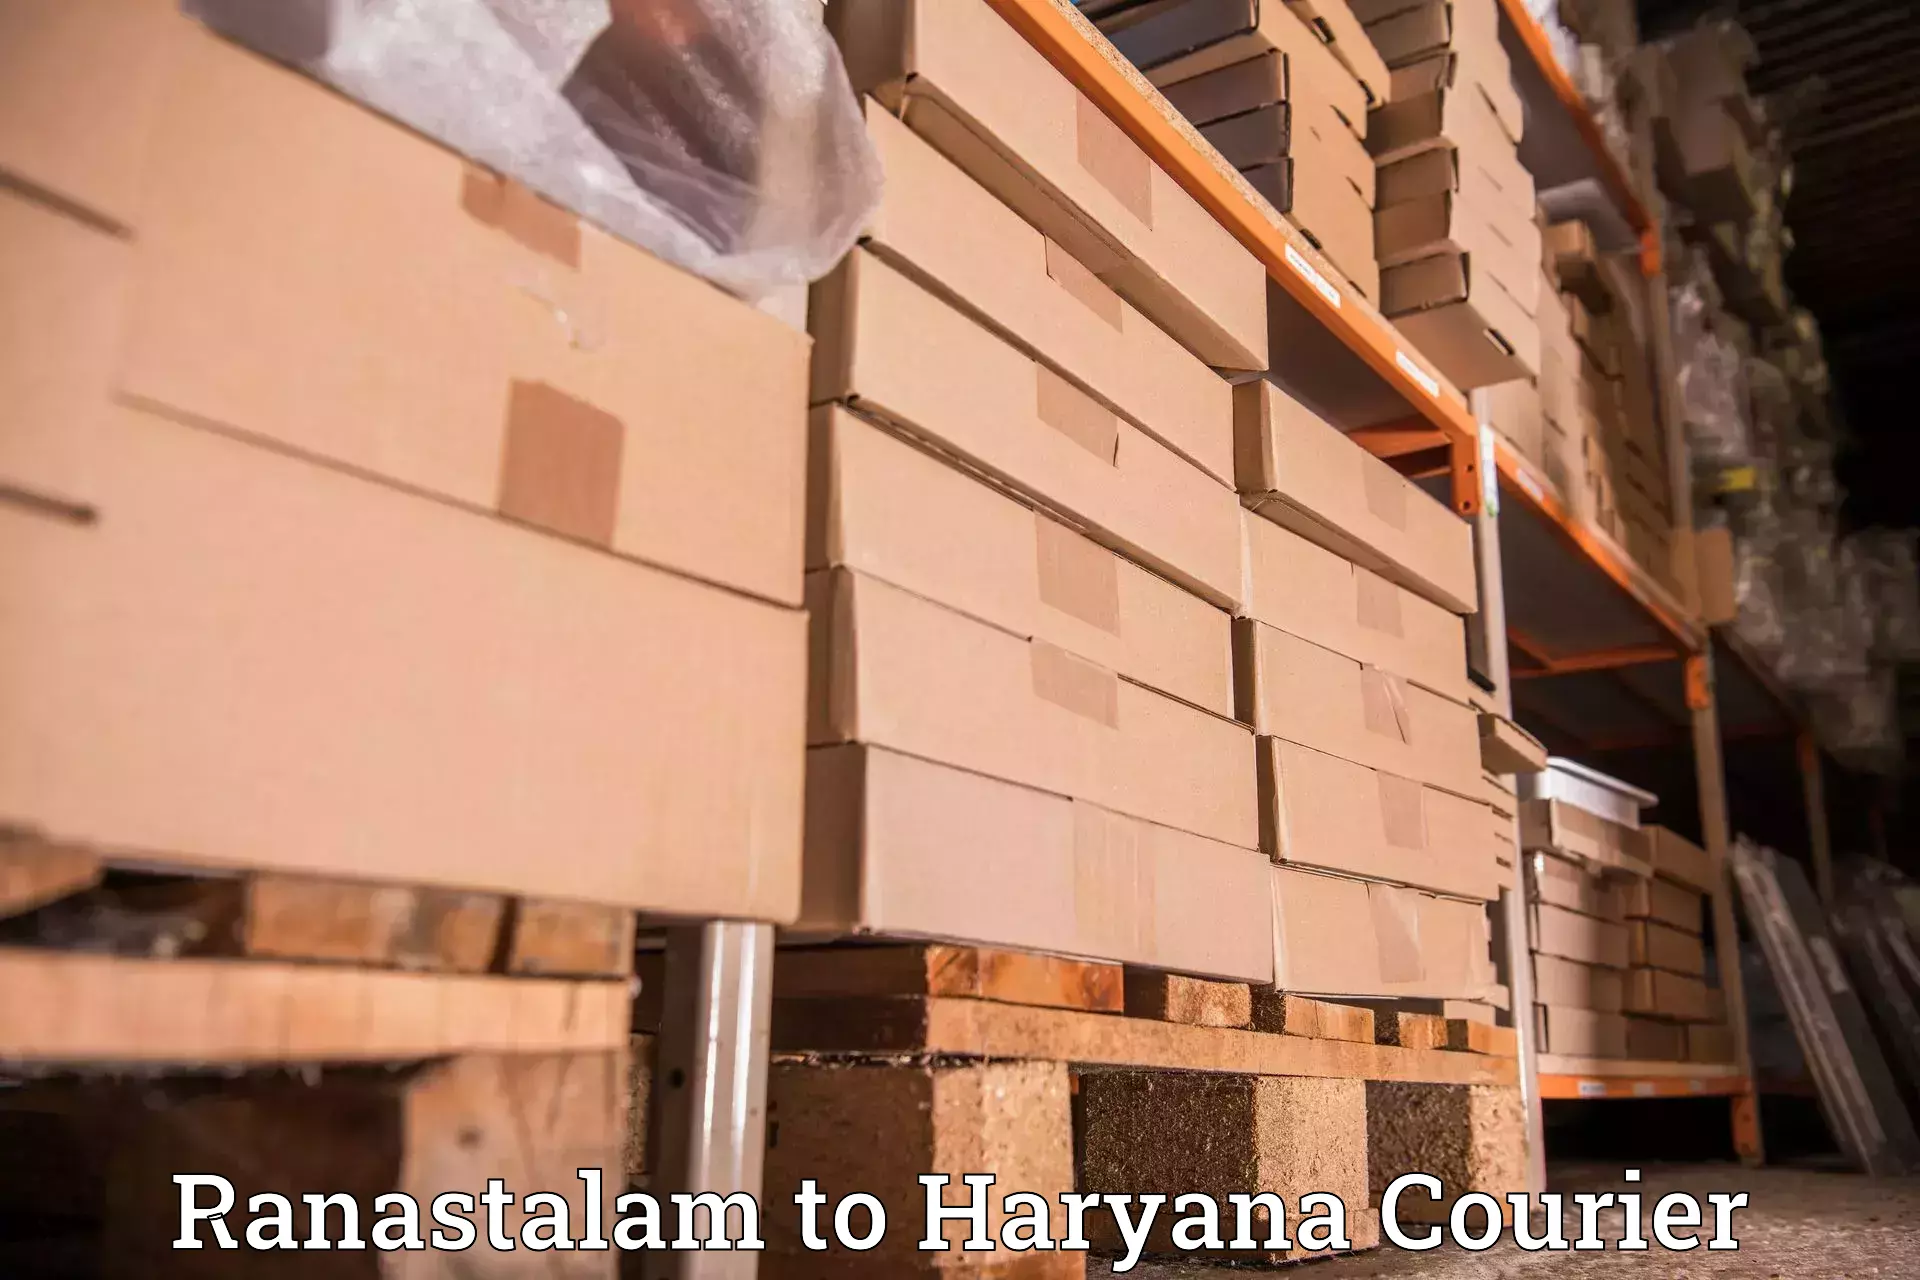 24-hour courier service Ranastalam to Chirya